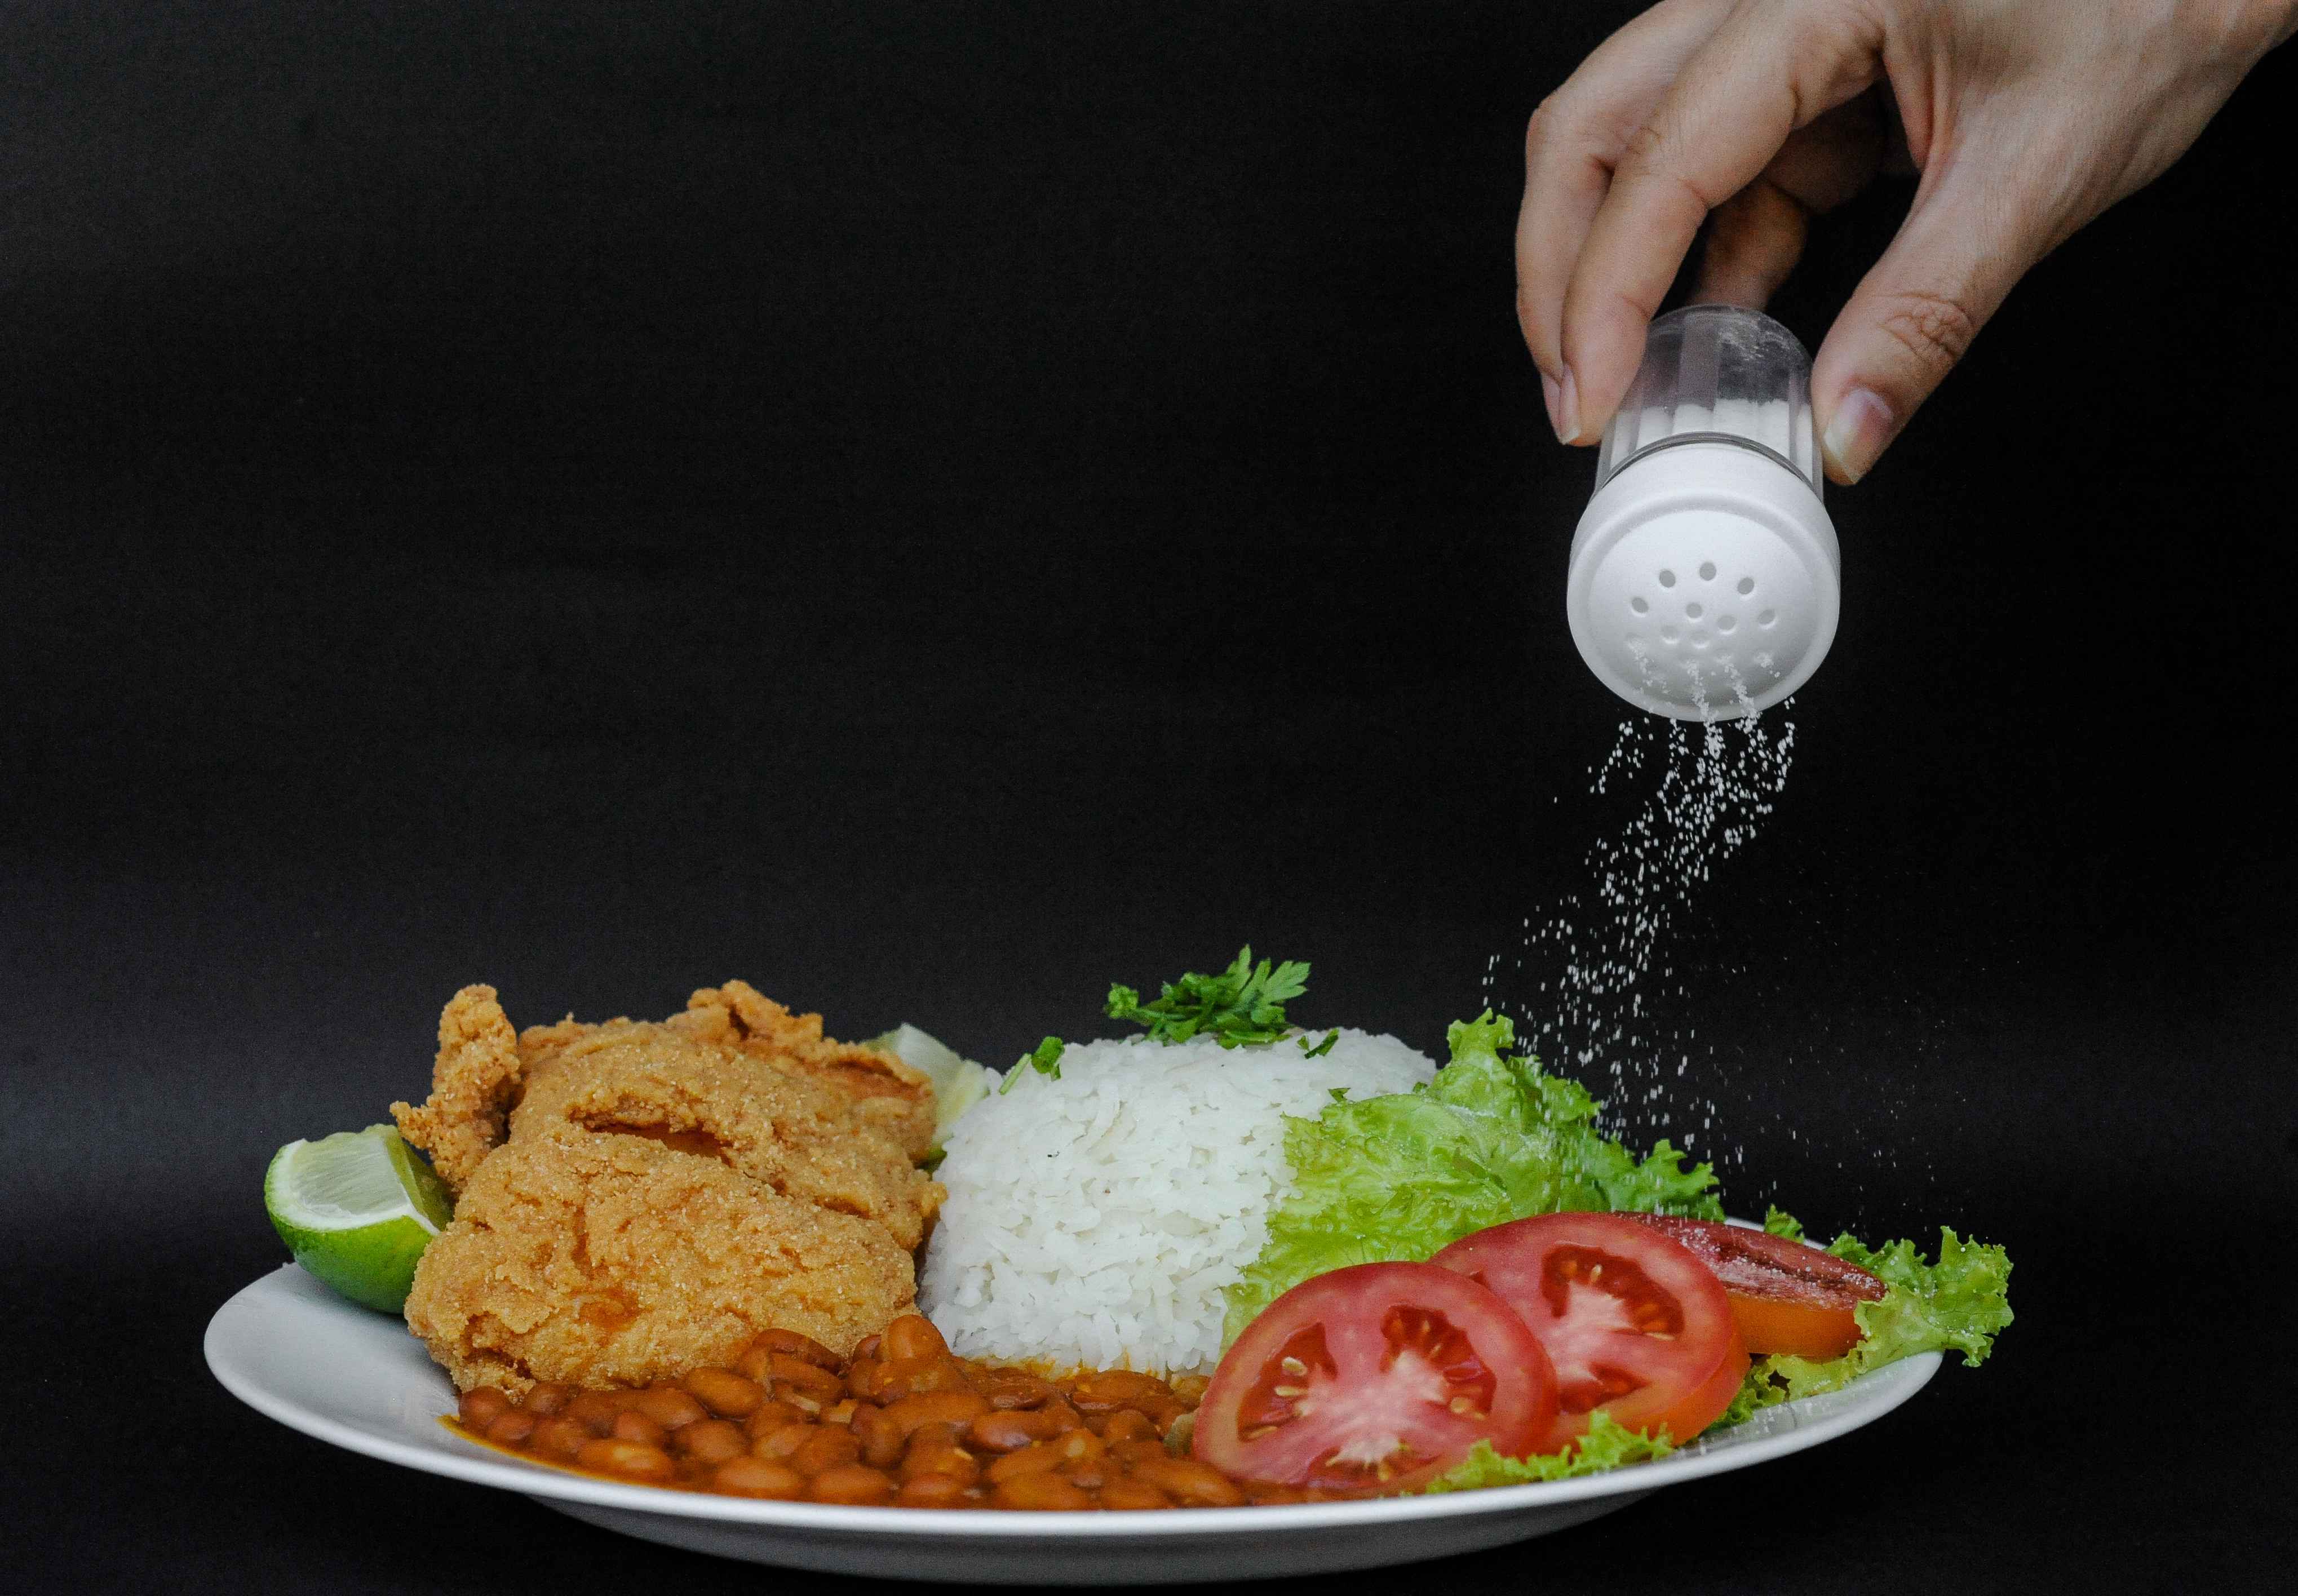 Em média, o brasileiro consome duas vezes mais sal de cozinha do que o padrão preconizado pela OMS